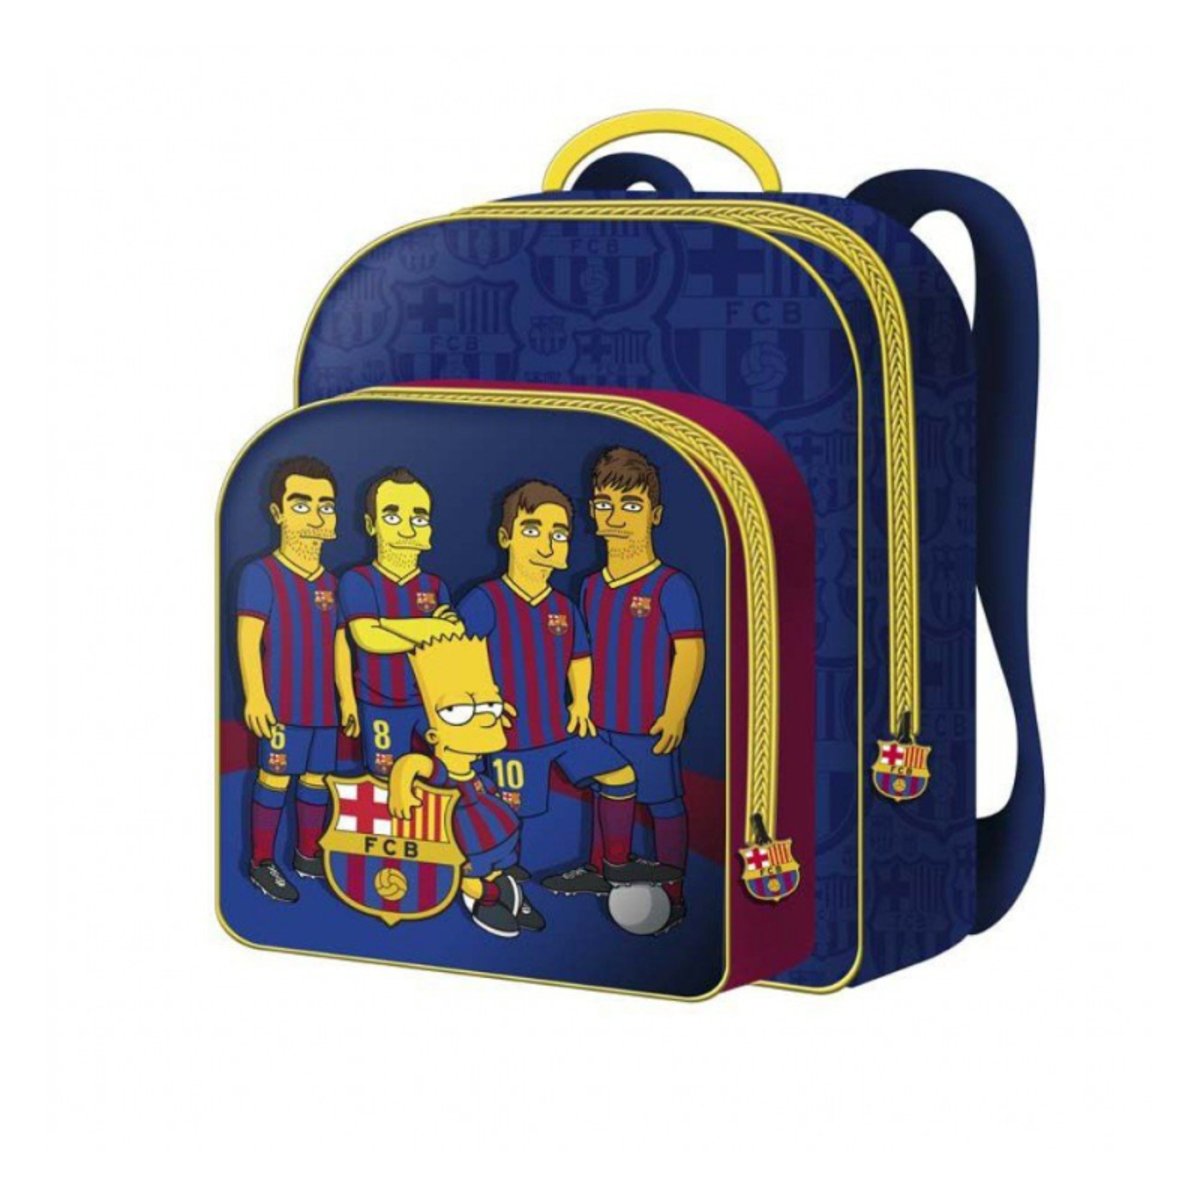 Estupenda mochila de Los Simpsons y jugadores del FC Barcelona